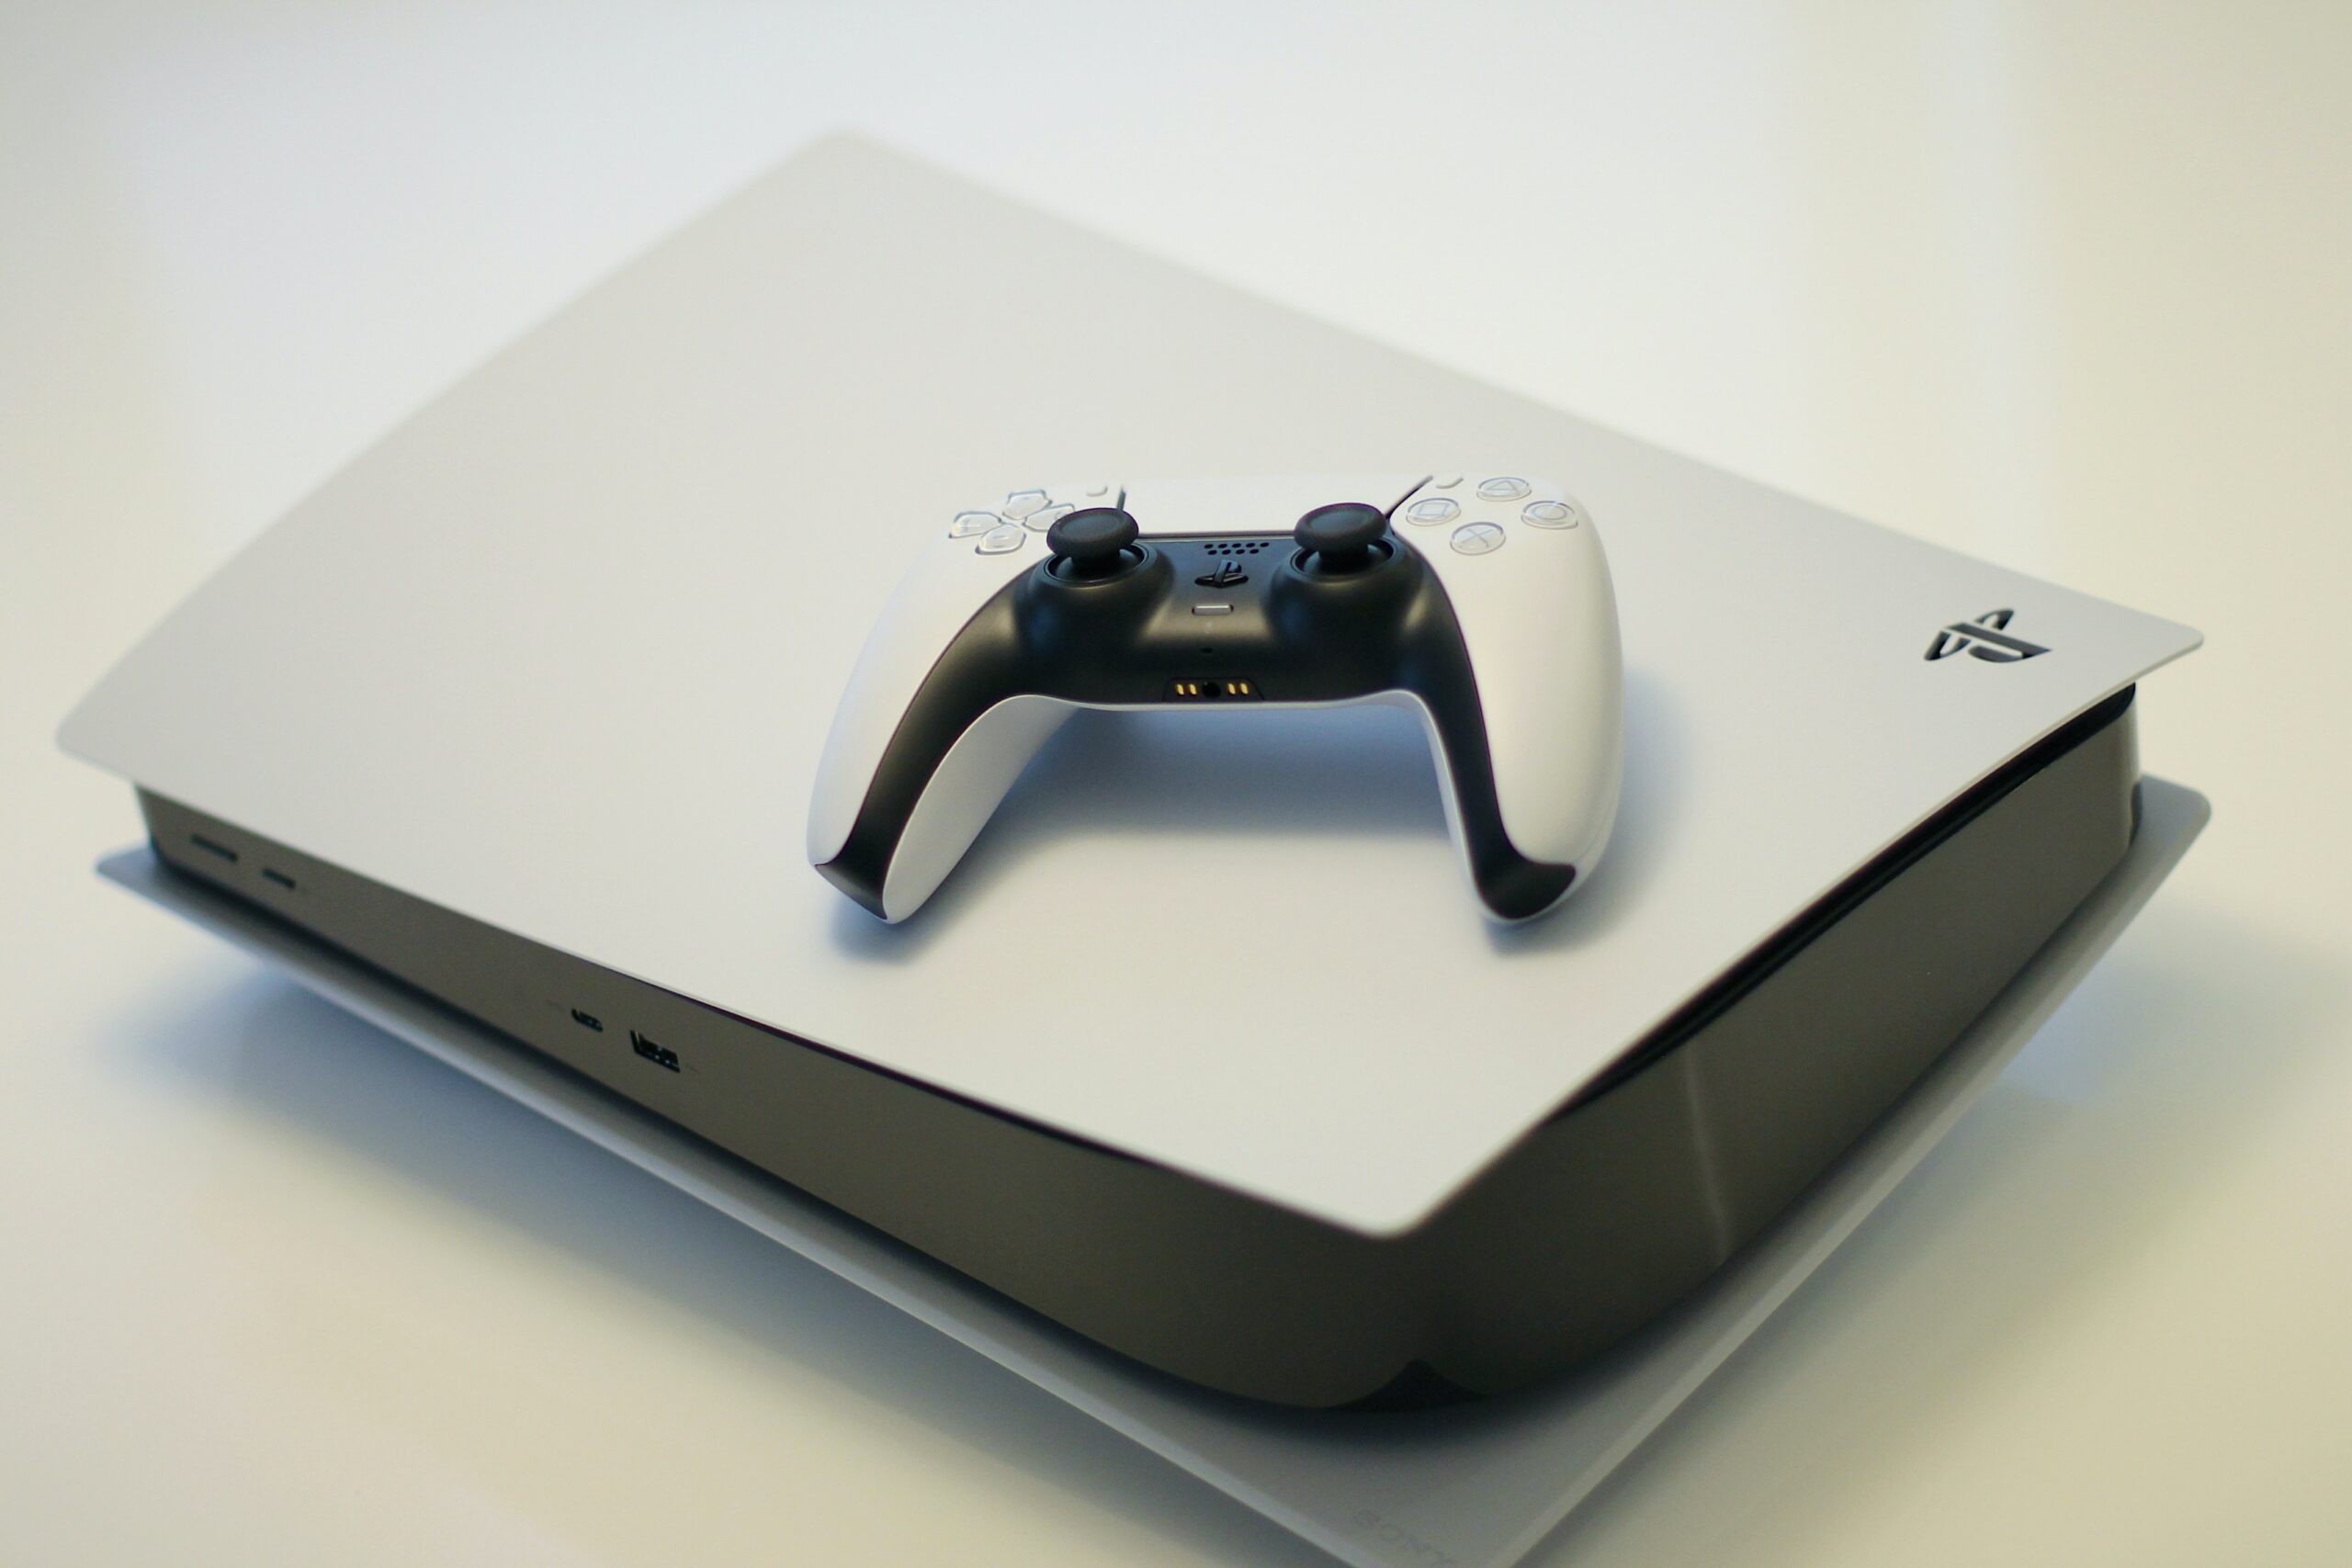 PlayStation Plus: confira os jogos de janeiro para PS4 e PS5